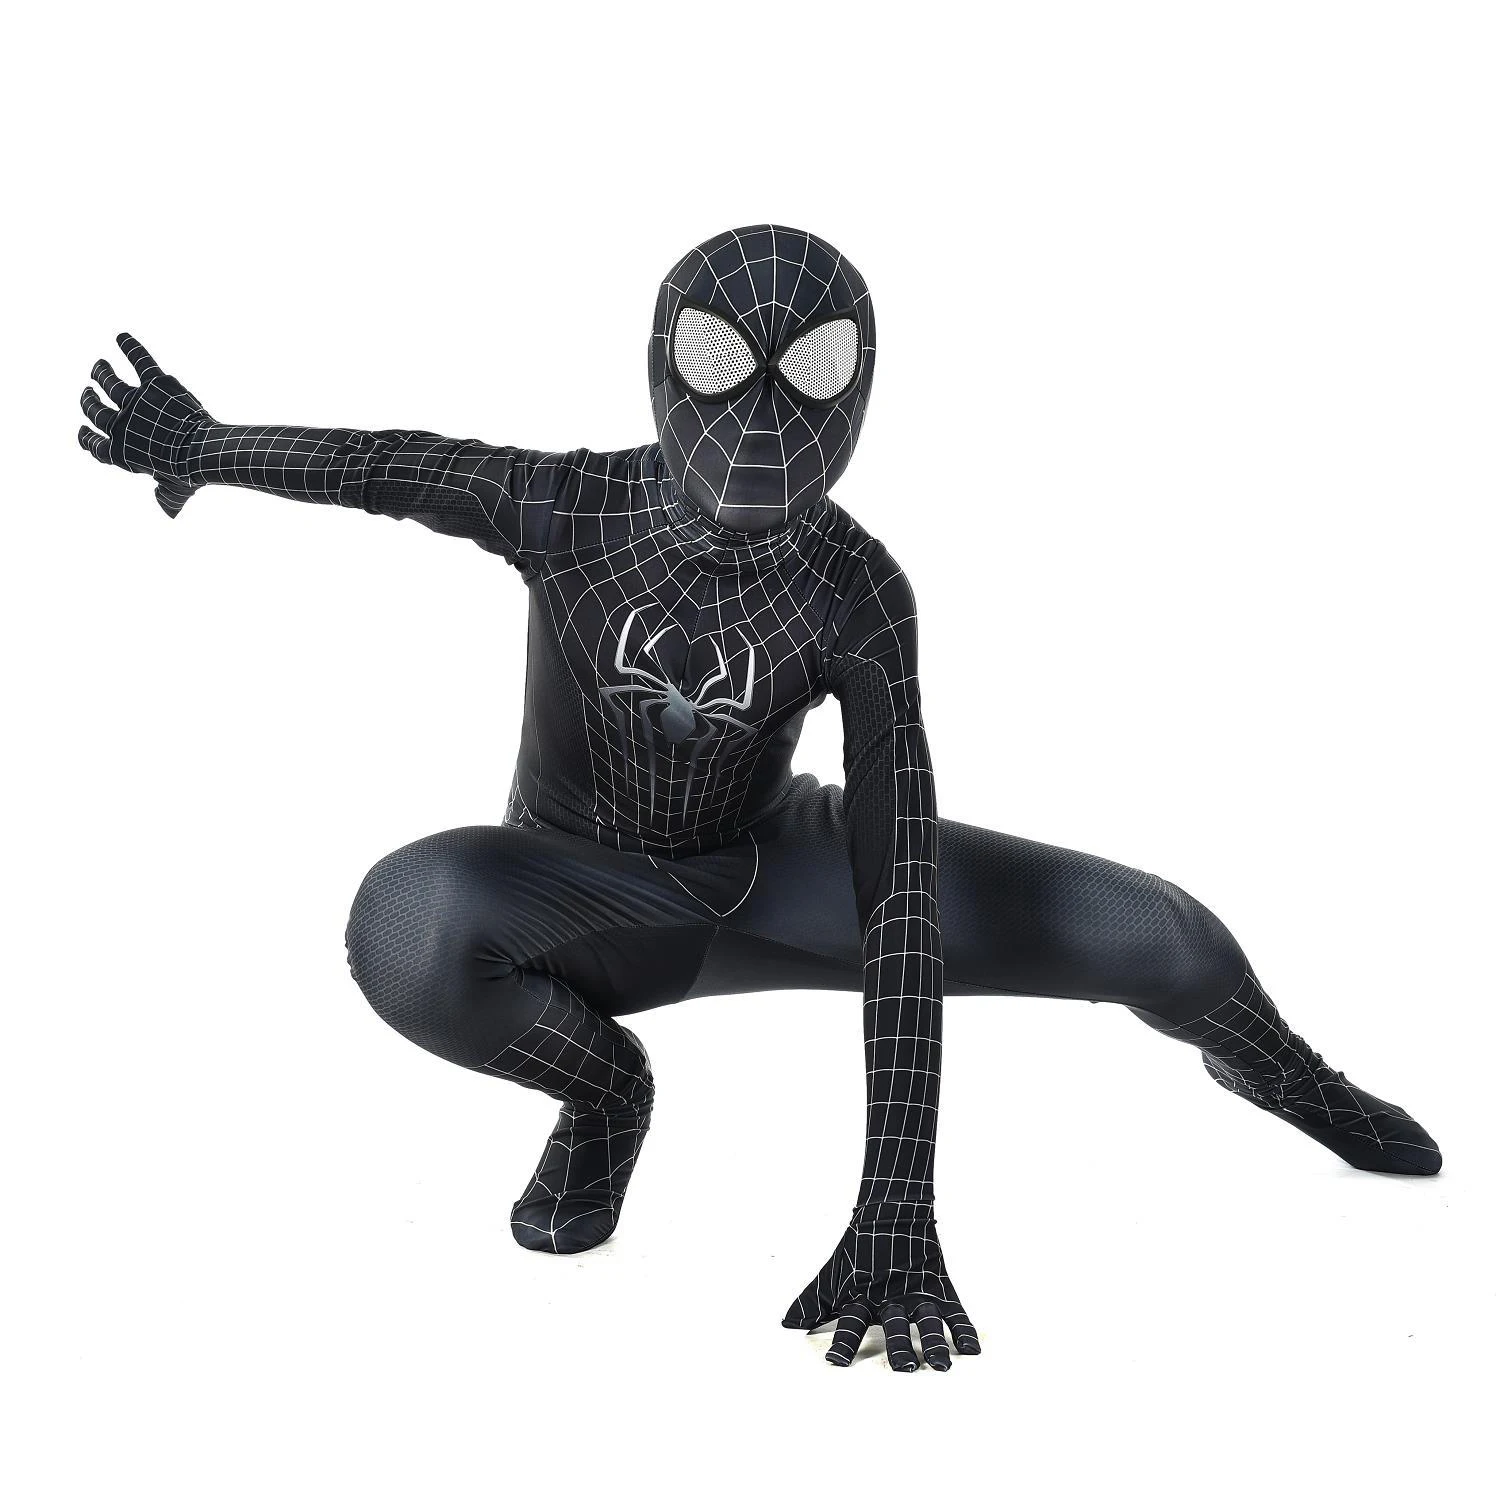 Лидер продаж, облегающий костюм с пауком супергероя, косплей, взрослый костюм Человека-паука, косплей супергероя, 3D Детский костюм Человека-паука - Цвет: Black